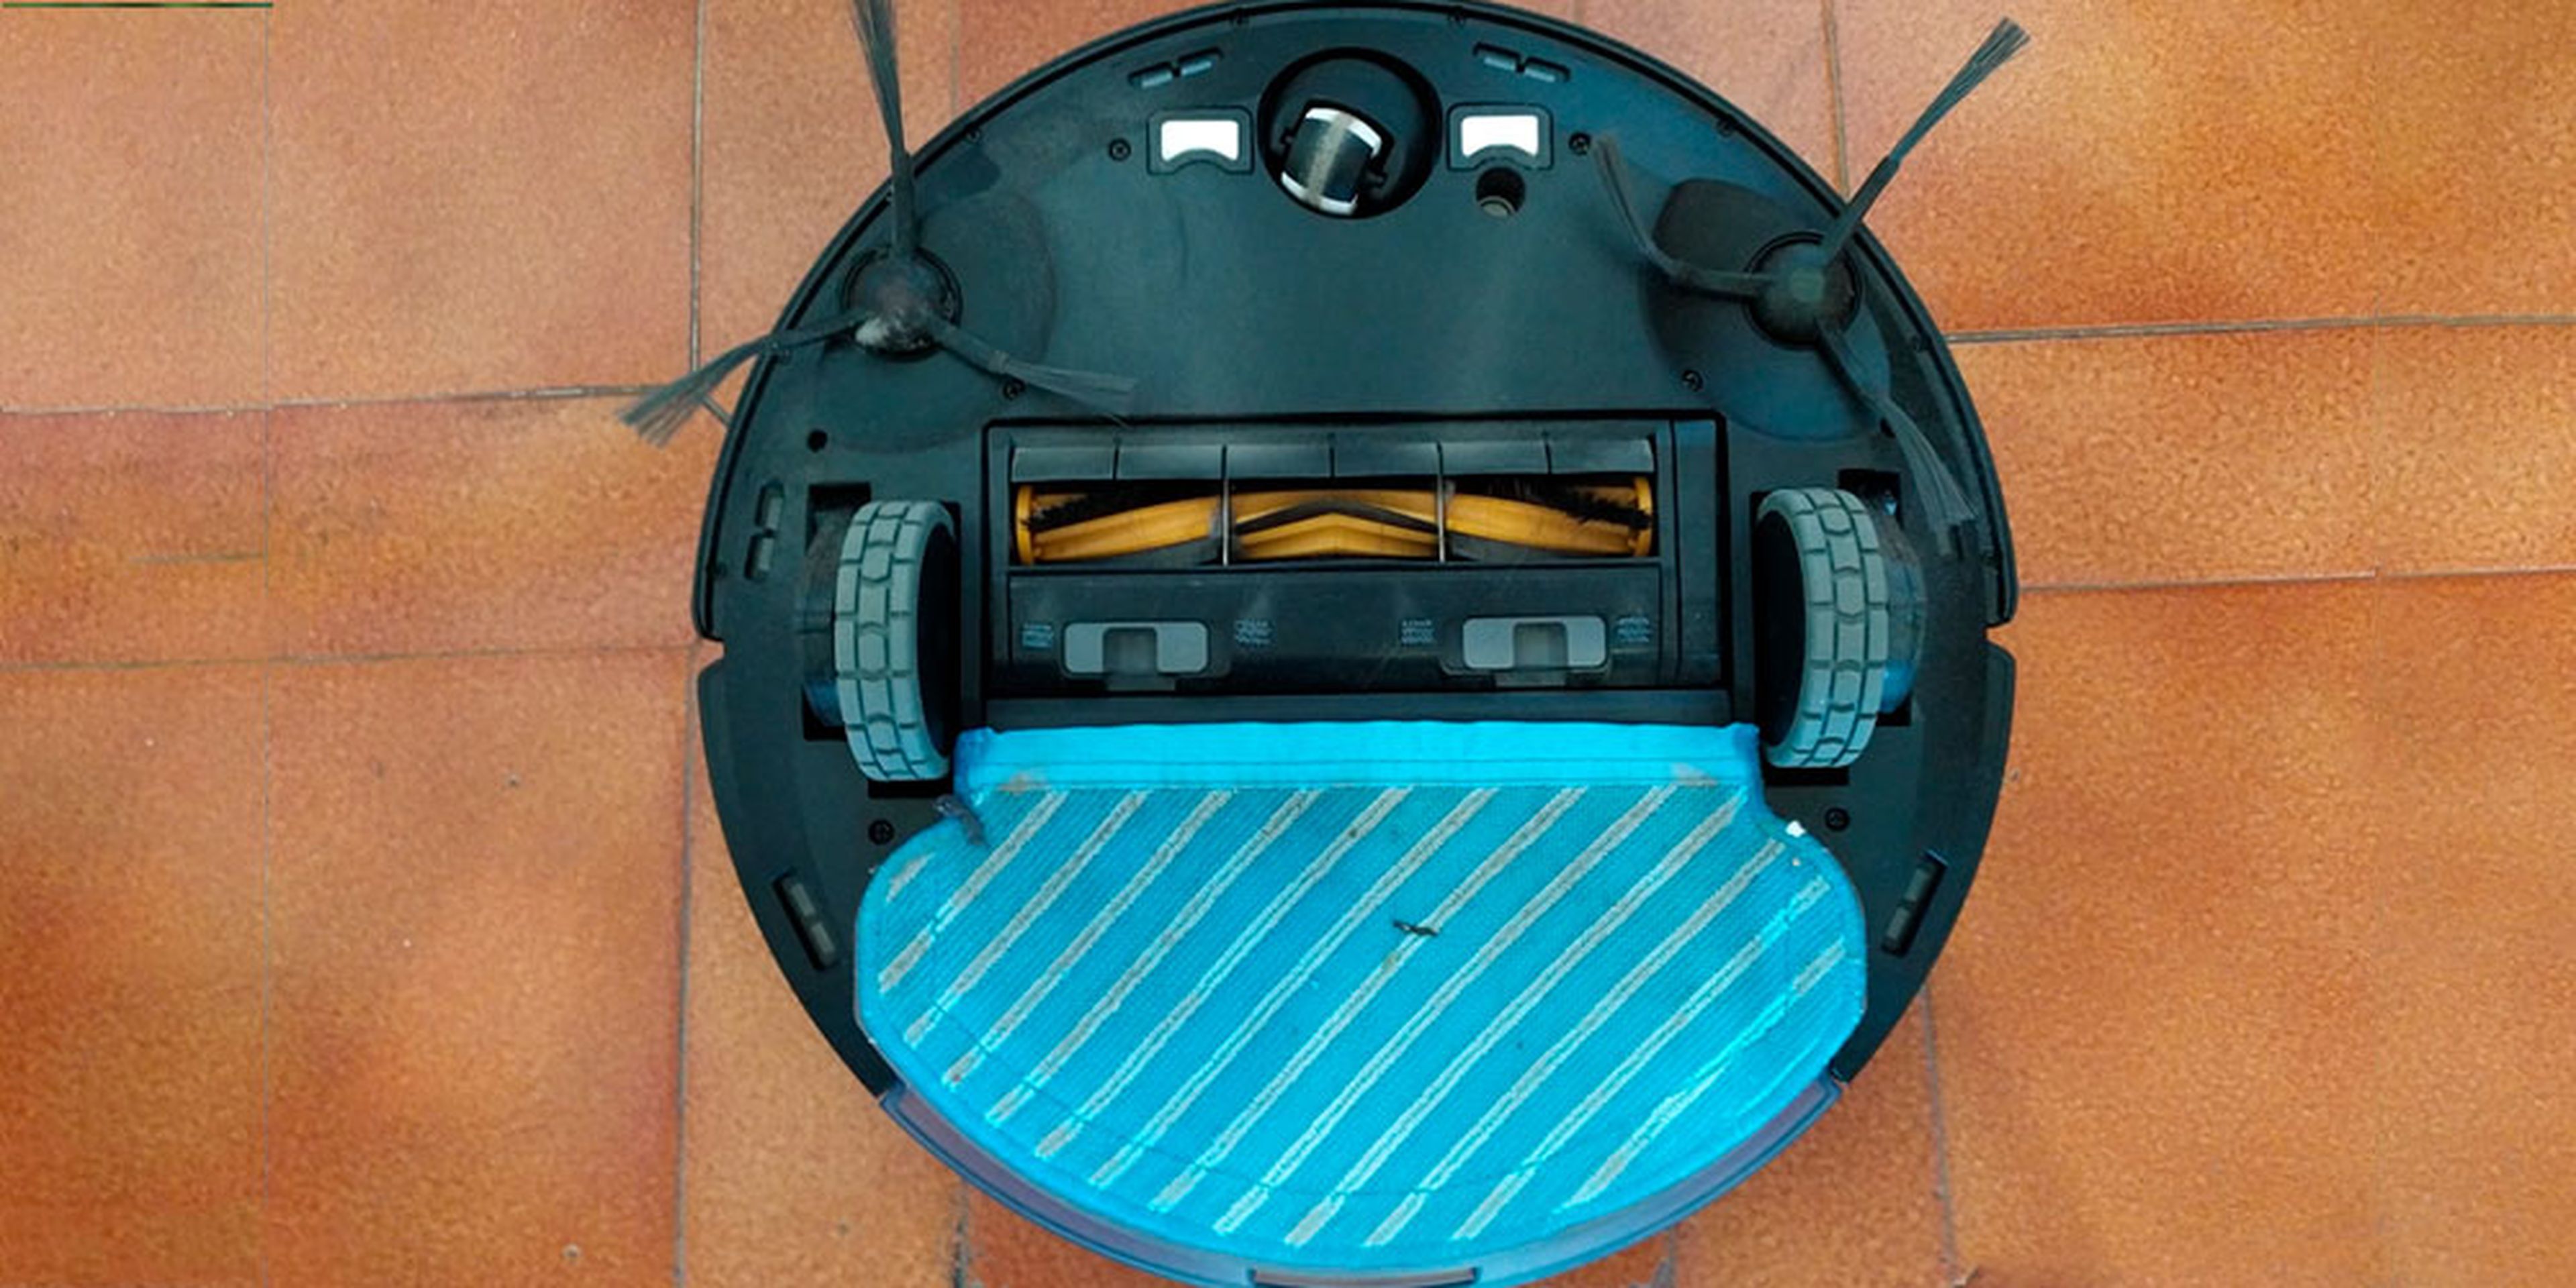 Robot aspirador de Lavado rápido, cómodo y compatible con la lavadora